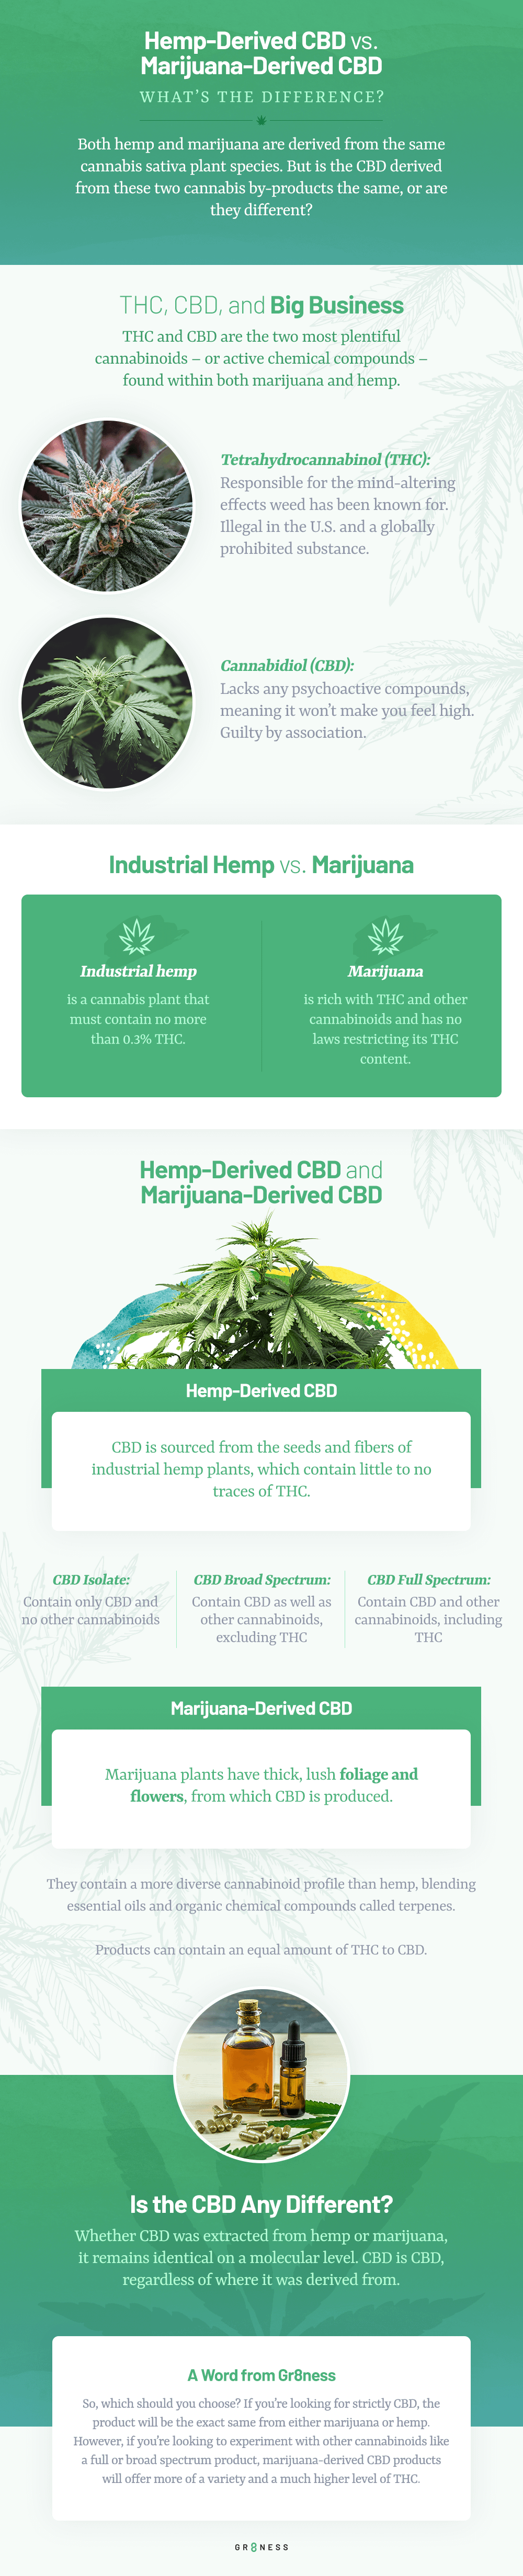 Chart describing the difference between hemp-derived CBD and marijuana-derived CBD